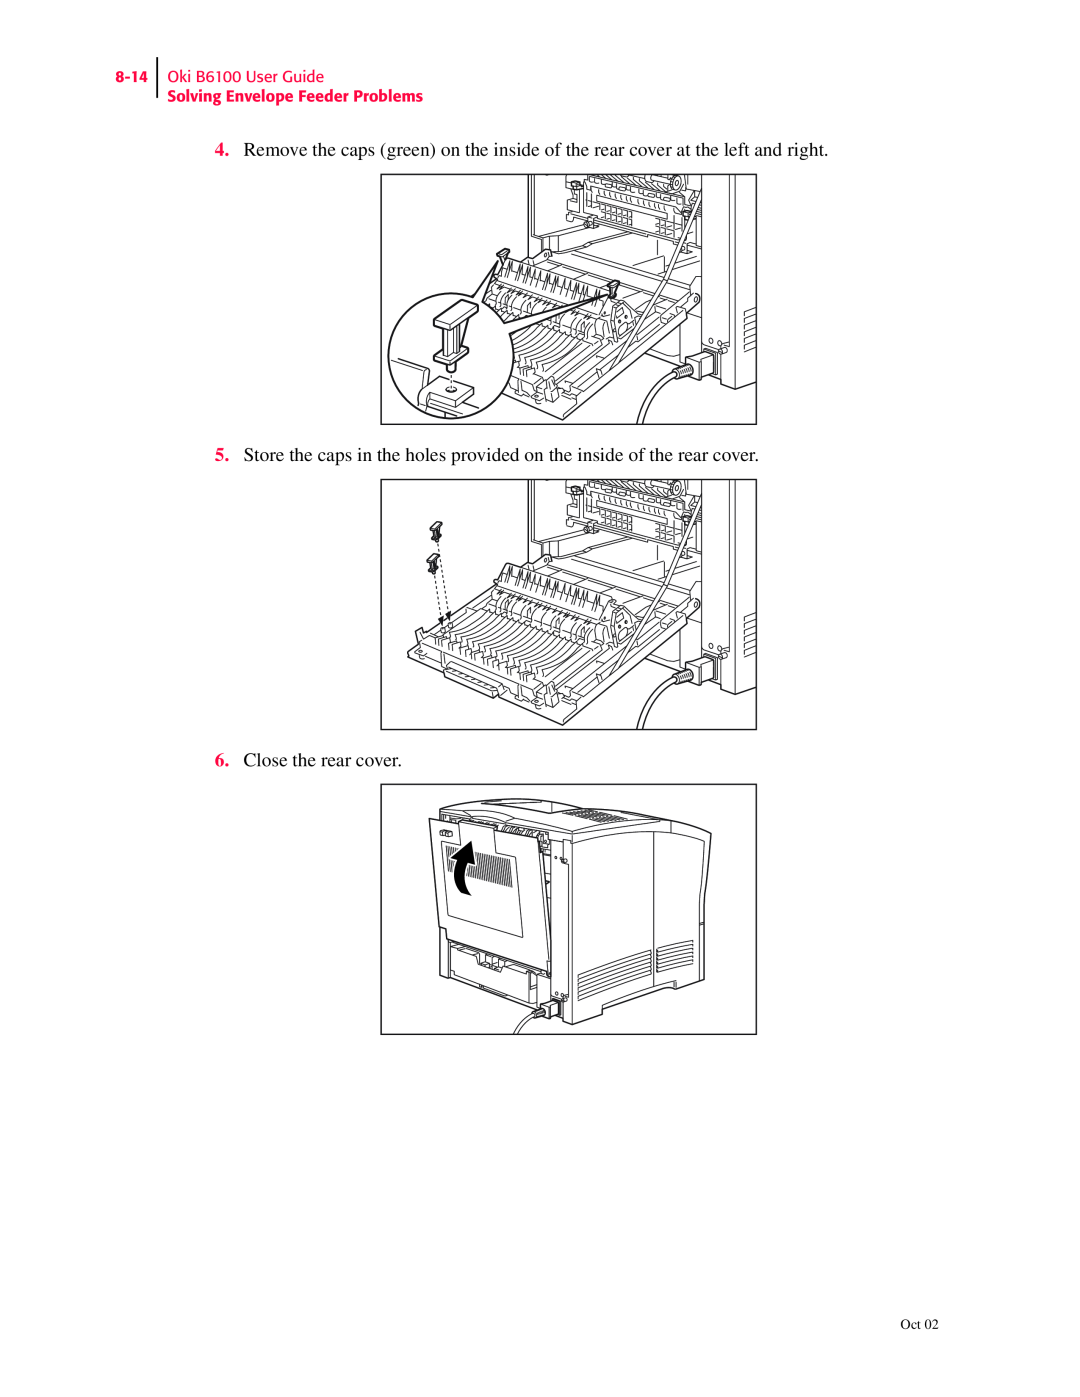 Oki manual Oki B6100 User Guide Solving Envelope Feeder Problems 